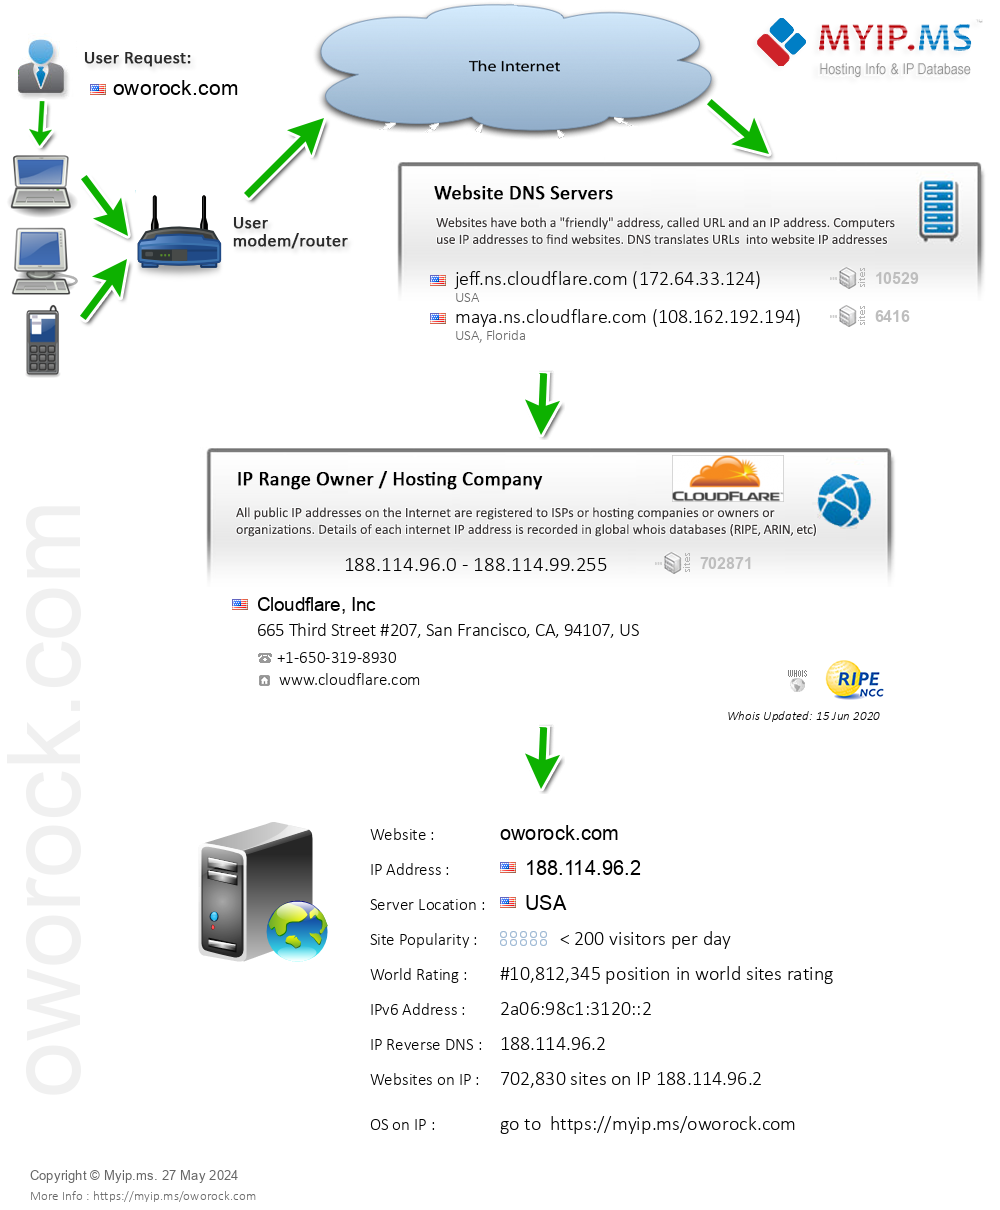 Oworock.com - Website Hosting Visual IP Diagram